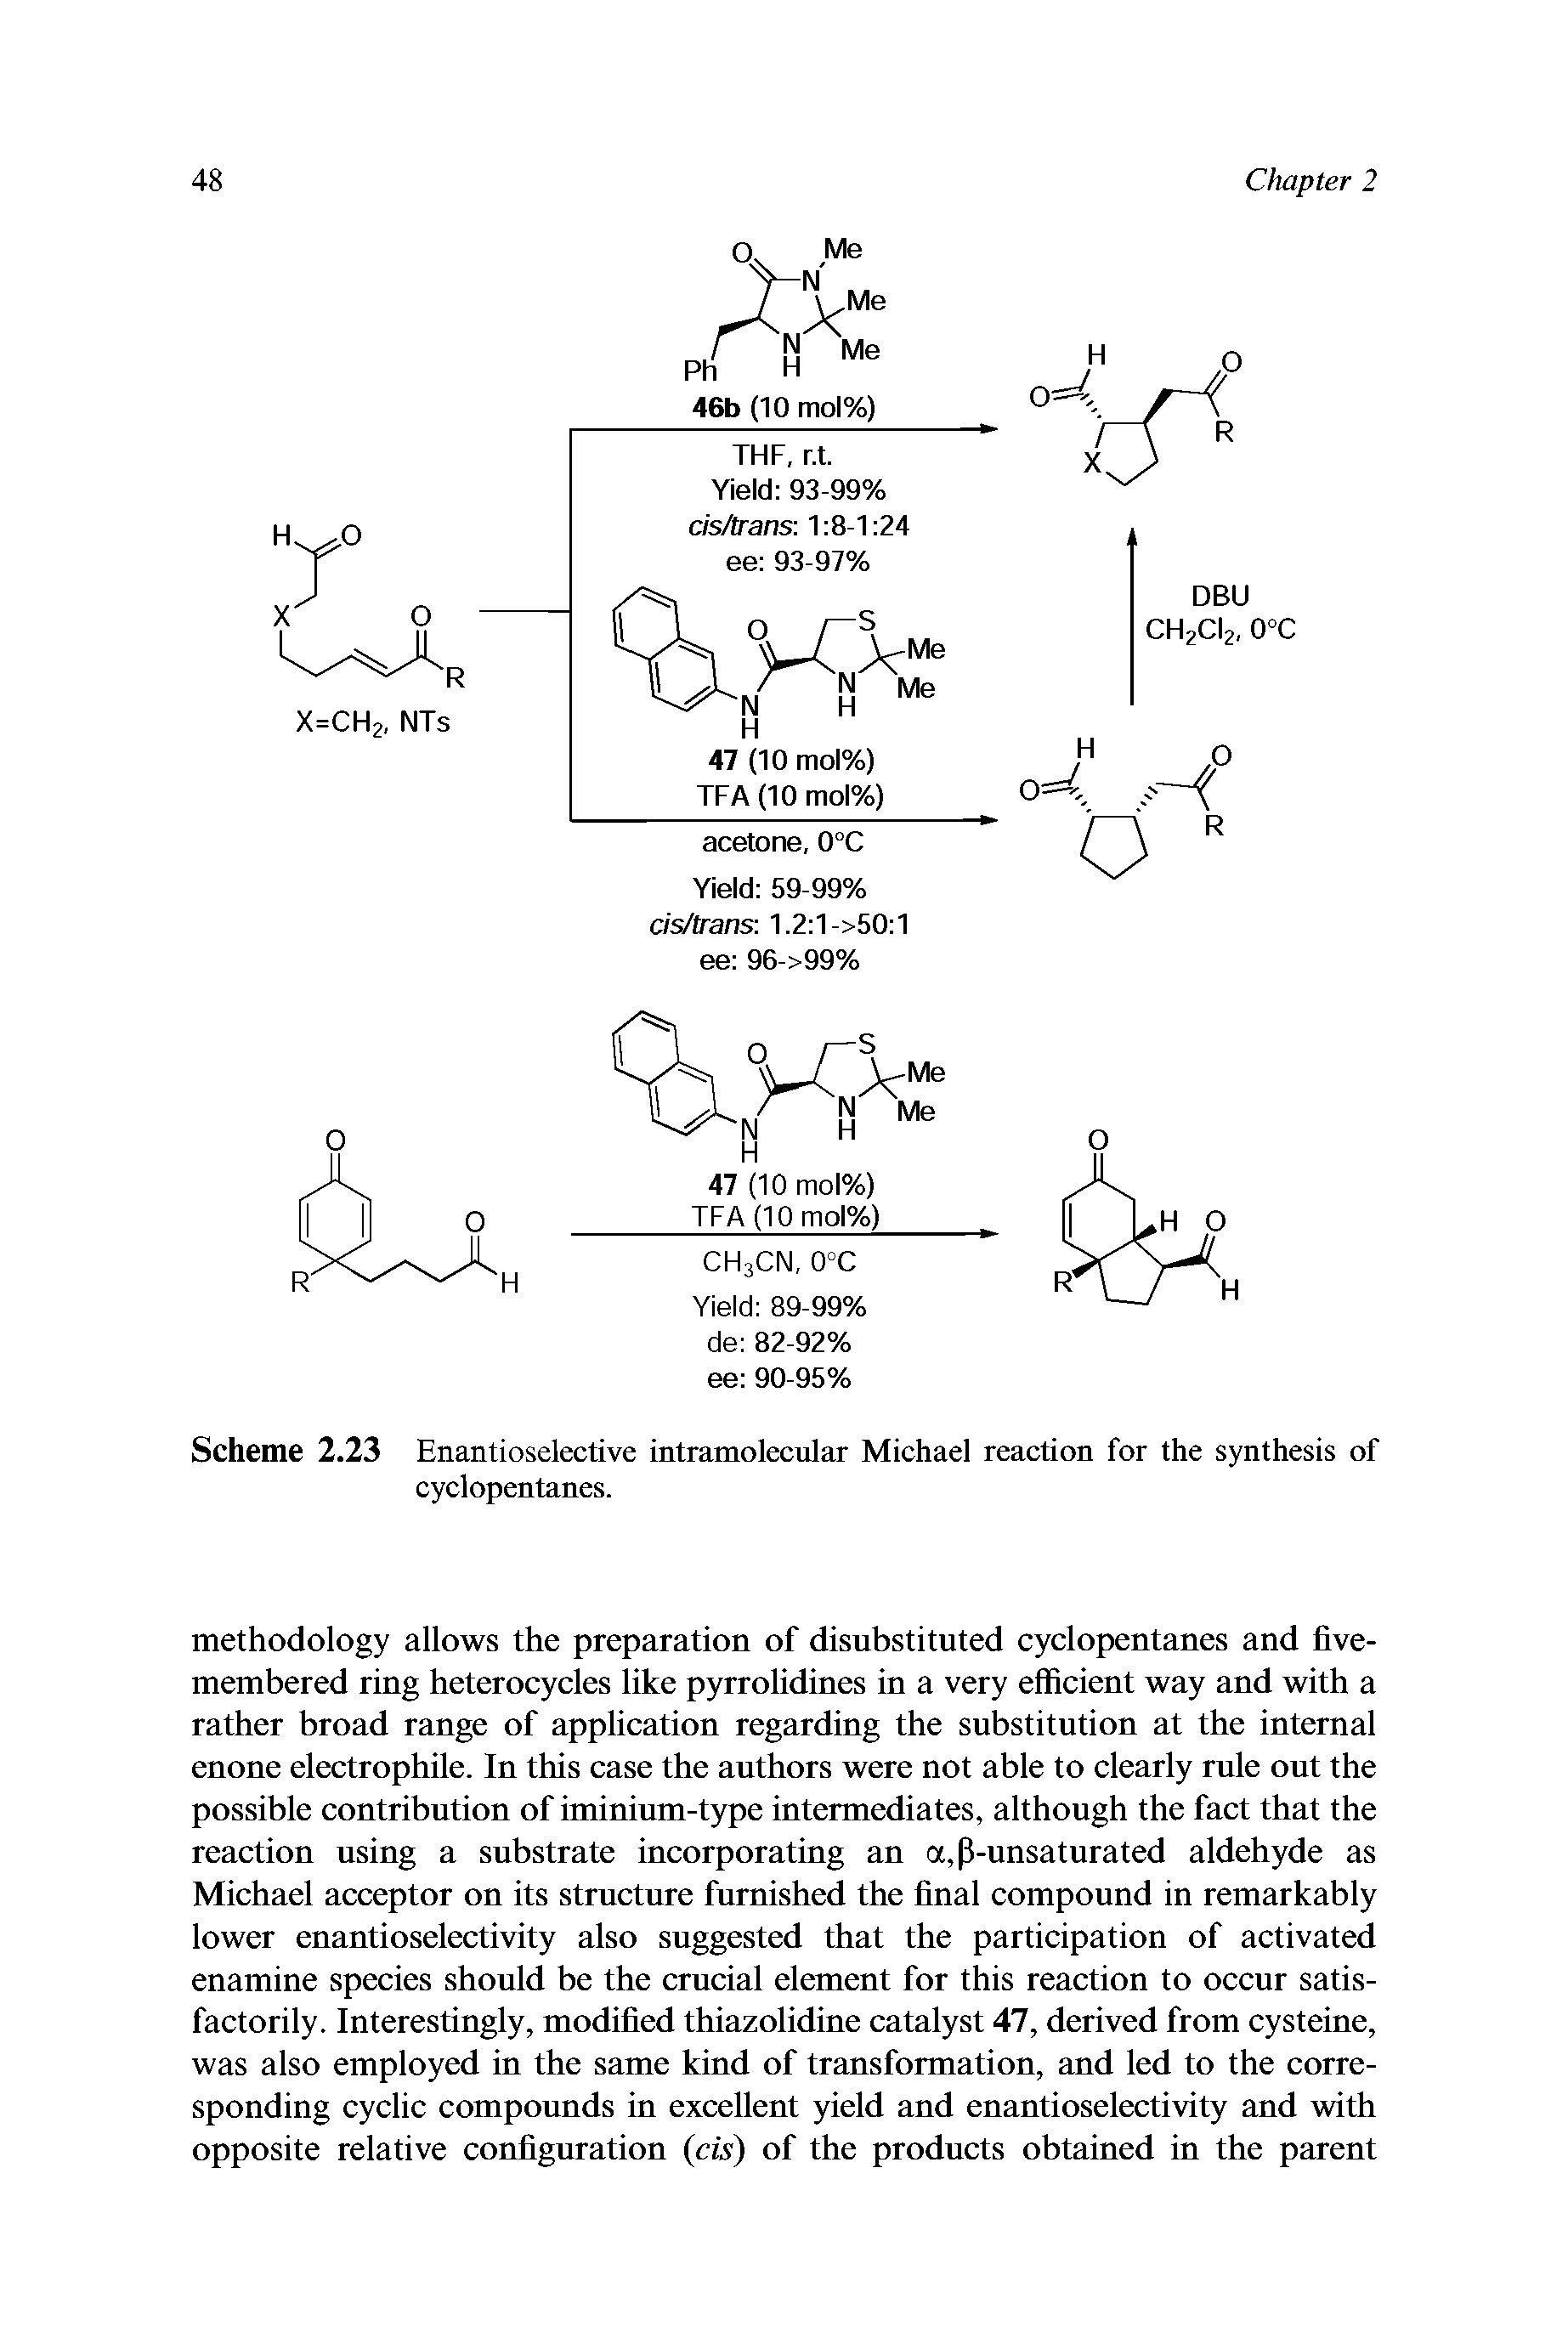 Scheme 2.23 Enantioselective intramolecular Michael reaction for the synthesis of cyclopentanes.